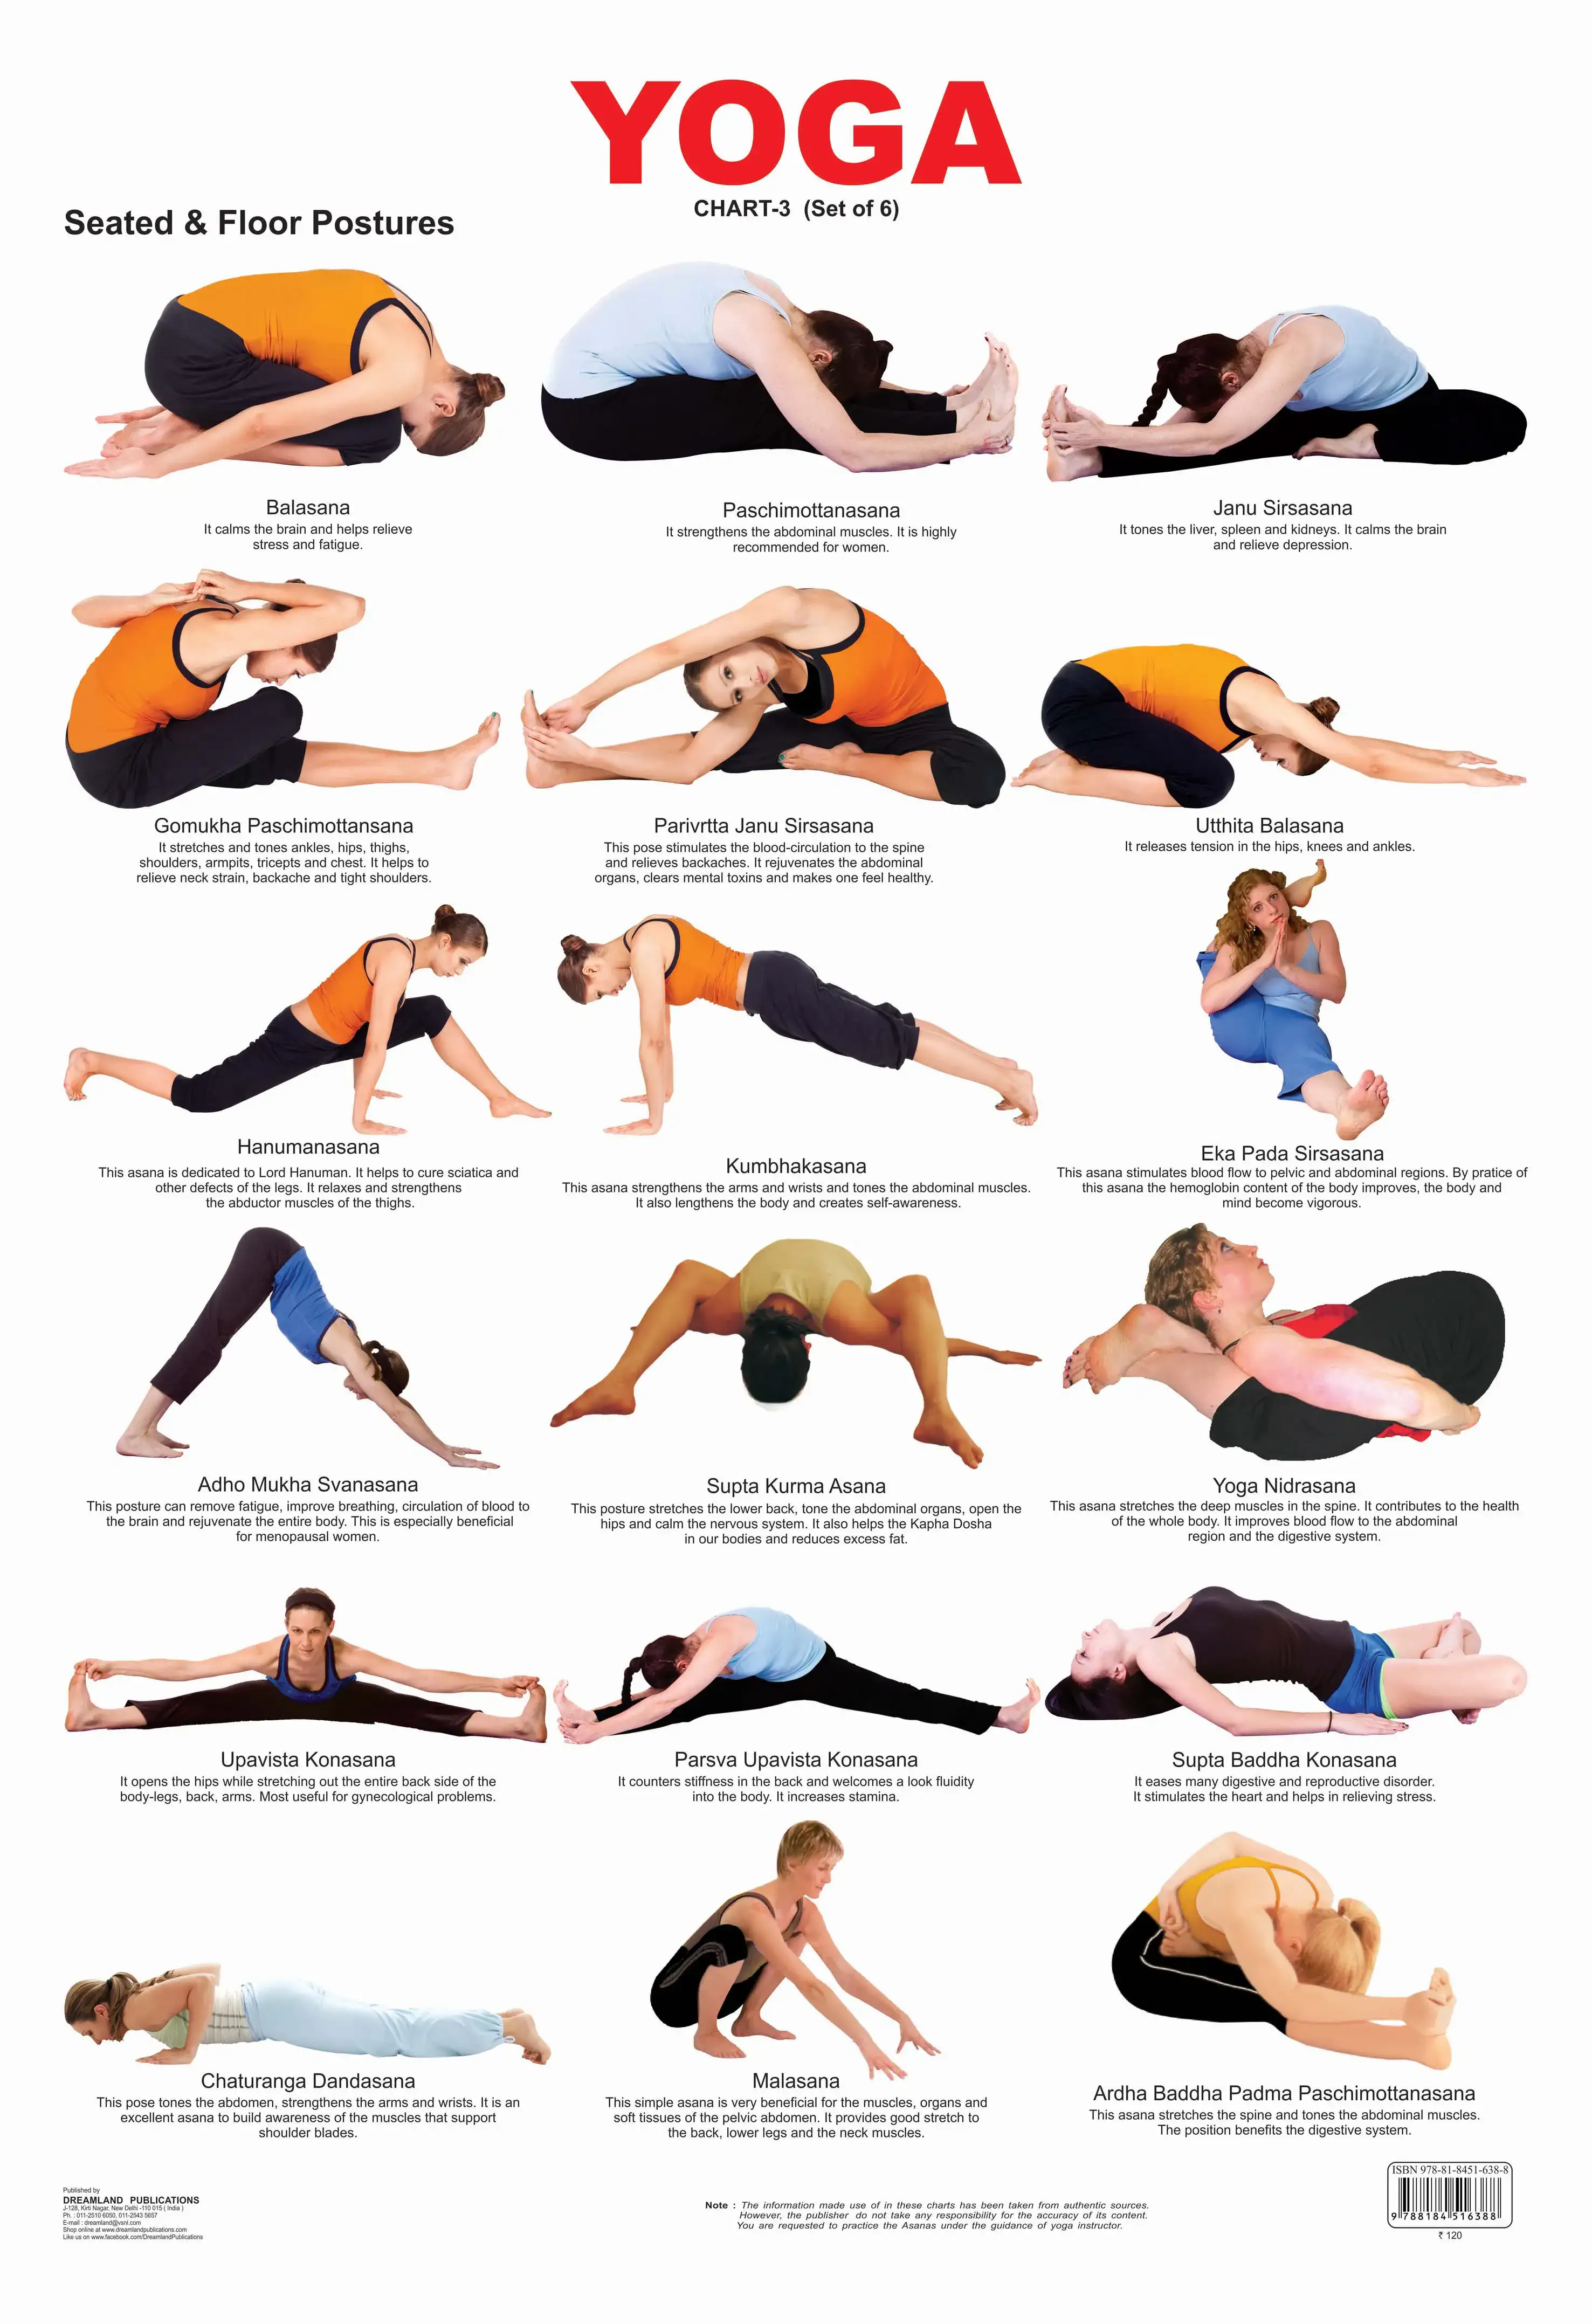 Seated Yoga Poses • Yoga Basics: Yoga Poses, Meditation, History,  Philosophy & More